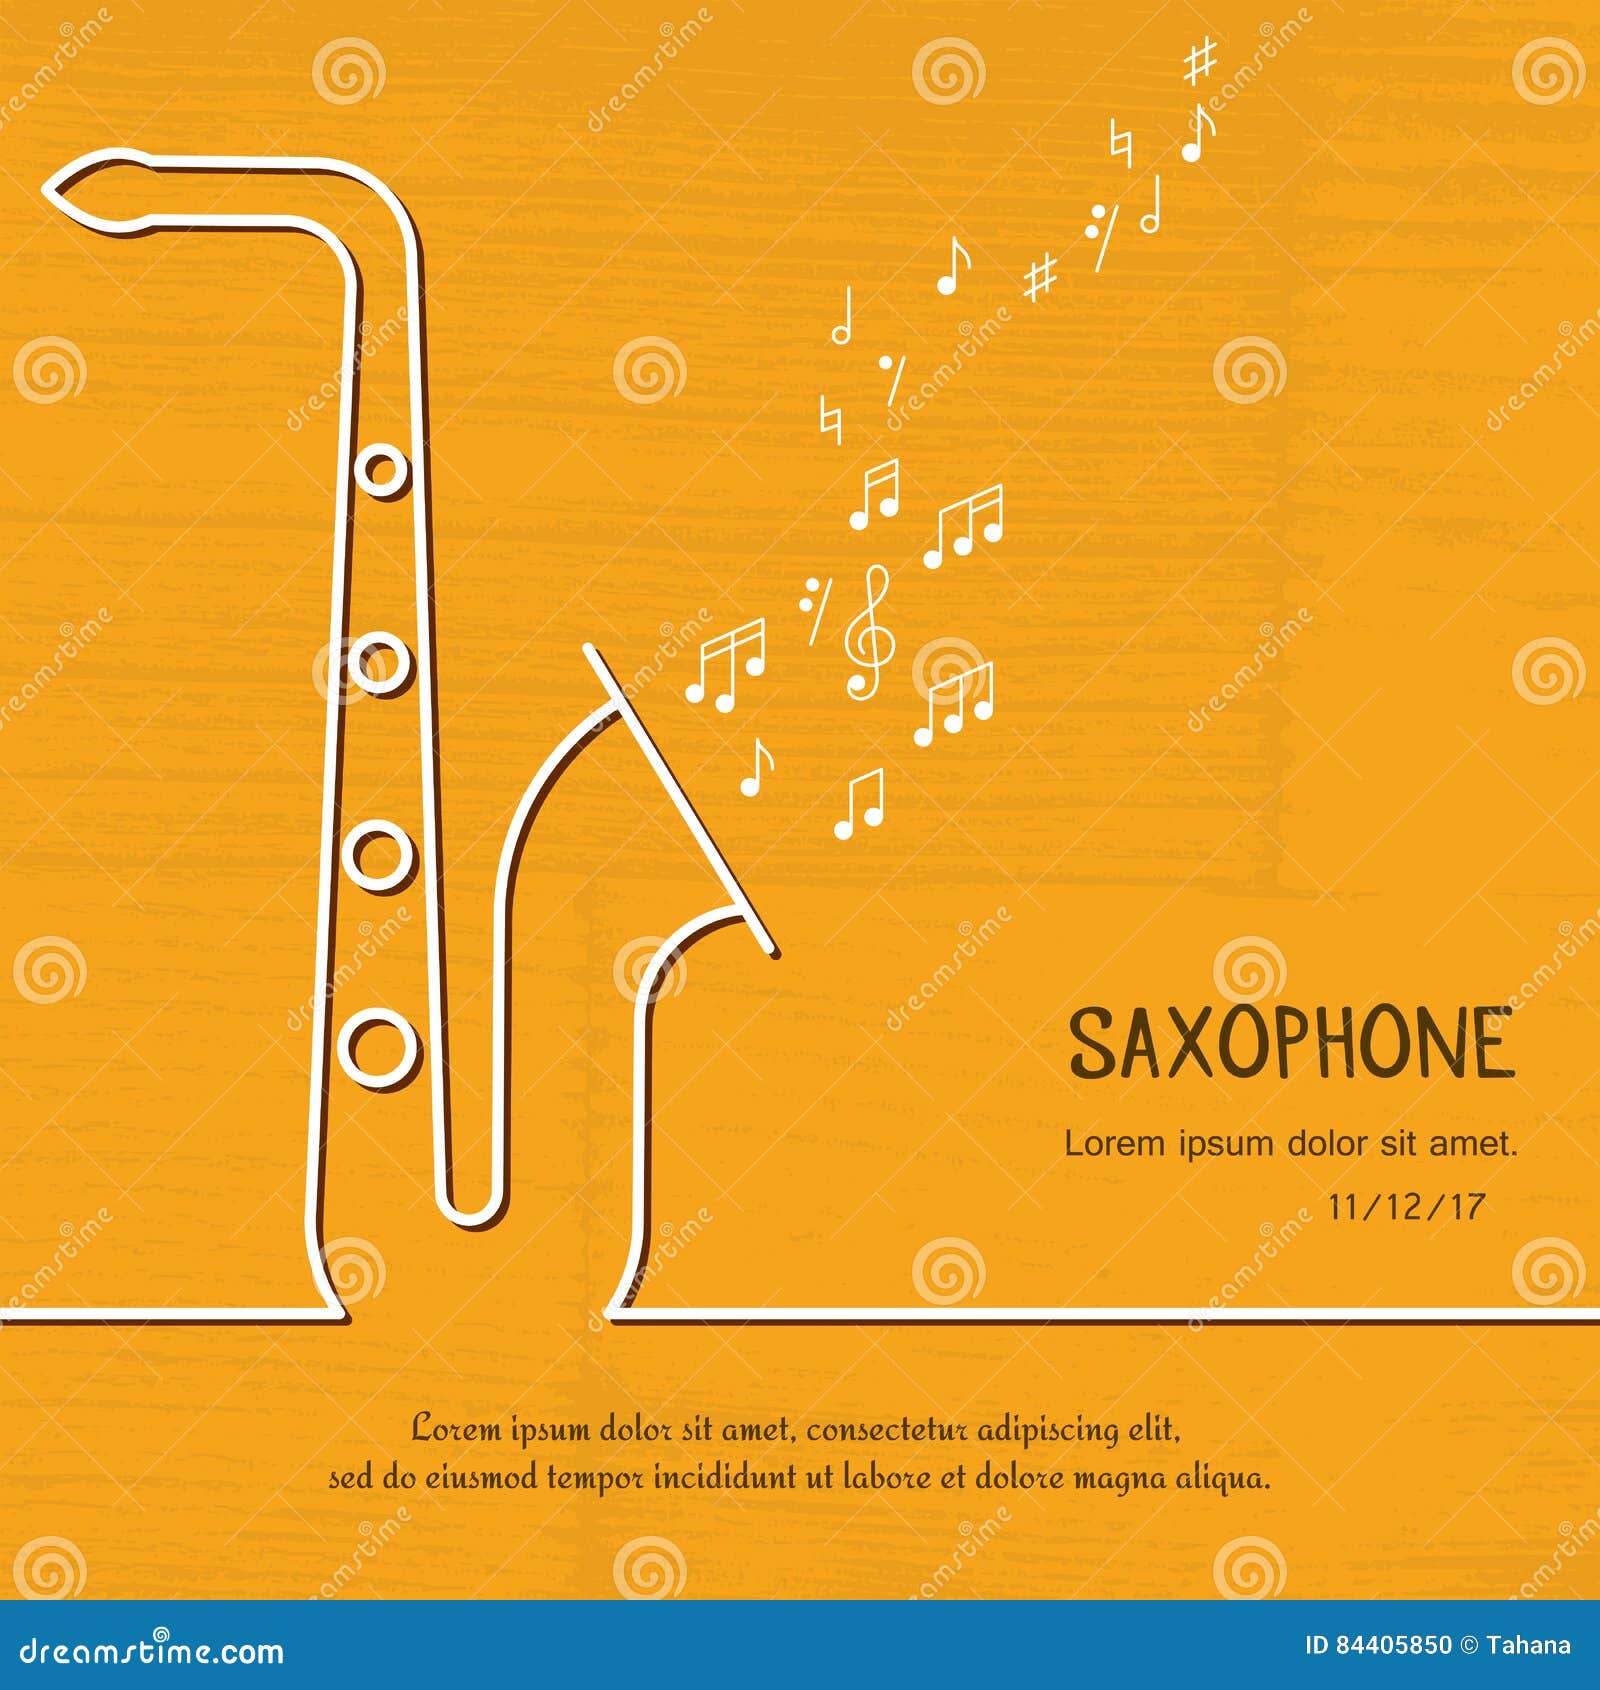 Cover saxophone trừu tượng khiến cho nhạc cụ này trở nên bí ẩn và đầy tính nghệ thuật. Những nốt nhạc mềm mại tràn ngập cảm xúc, kết hợp với tiếng saxophone, tạo thành một bài nhạc đầy cảm hứng. Hãy nghe những bản cover saxophone trừu tượng này và cảm nhận sự khác biệt của hòa âm và tiếng kêu saxophone.